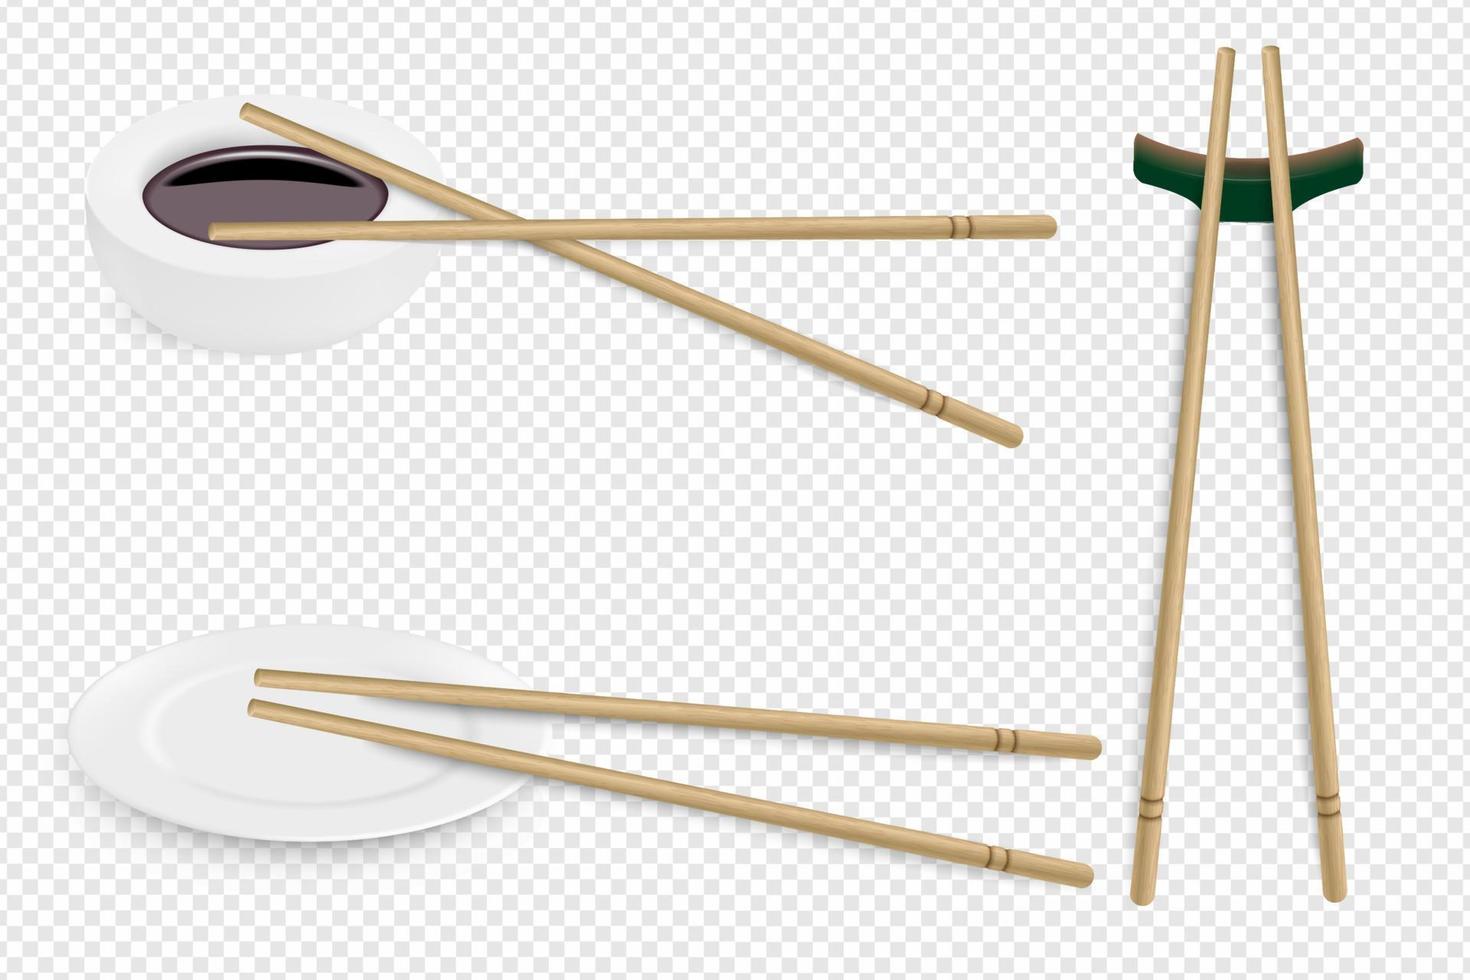 vector realistische set sushi-items met bamboestokken. illustratie van sushi tafel serveren op een transparante achtergrond